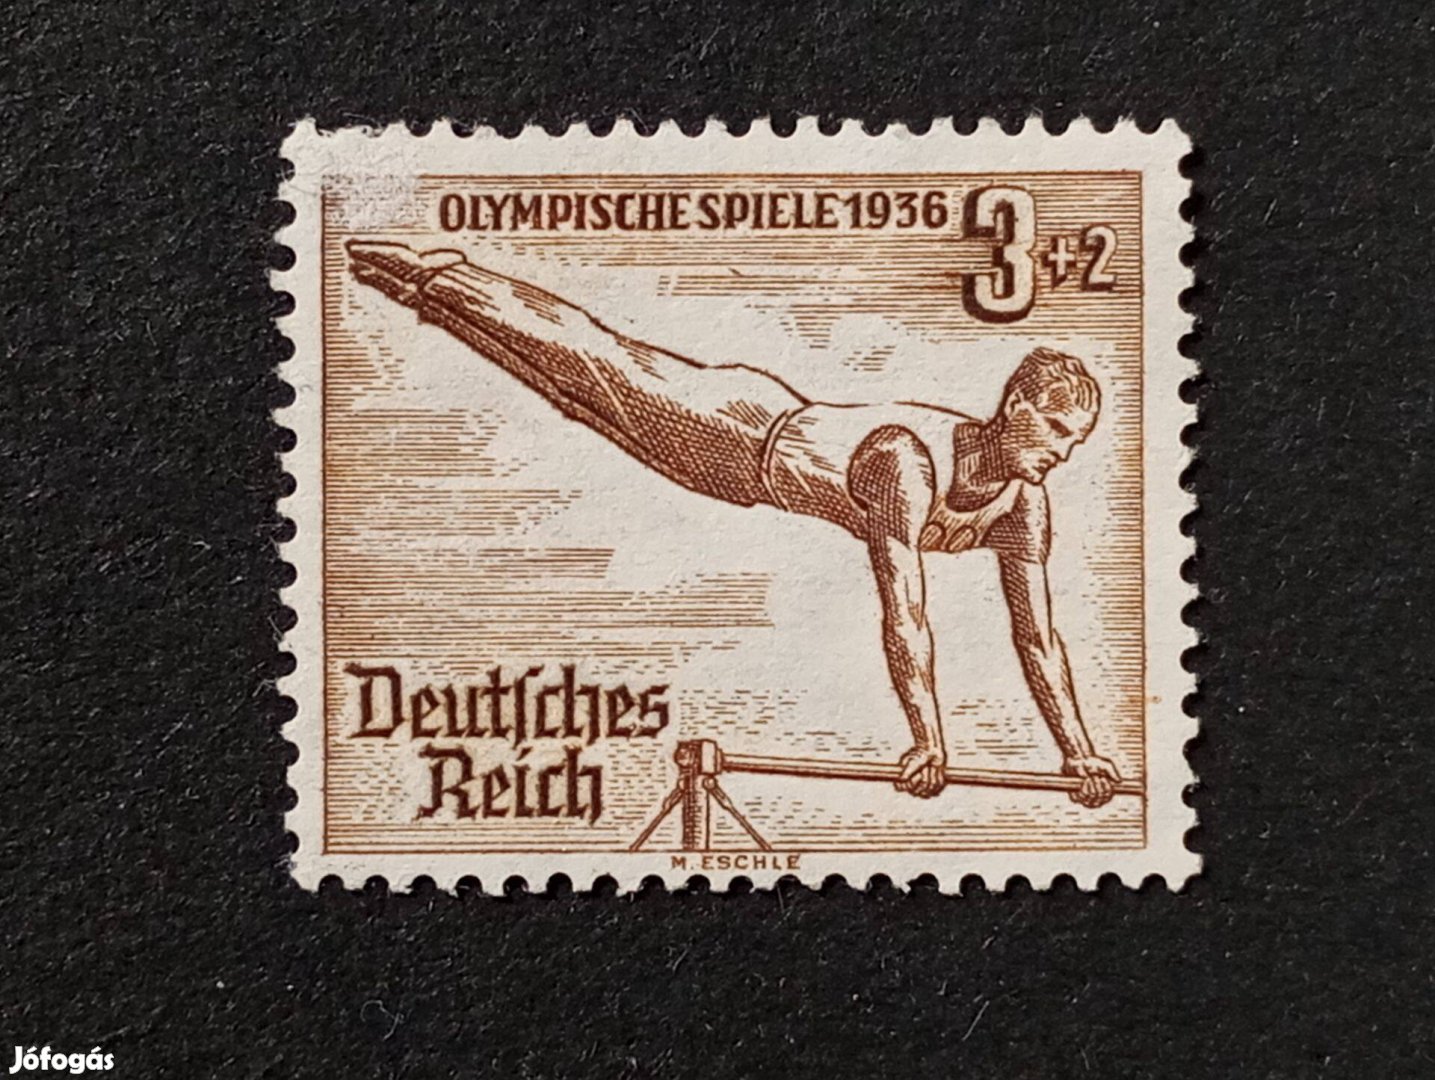 Deutsches Reich 3+2 Pfg. bélyeg 1936-os olimpiai játékok - Berlin